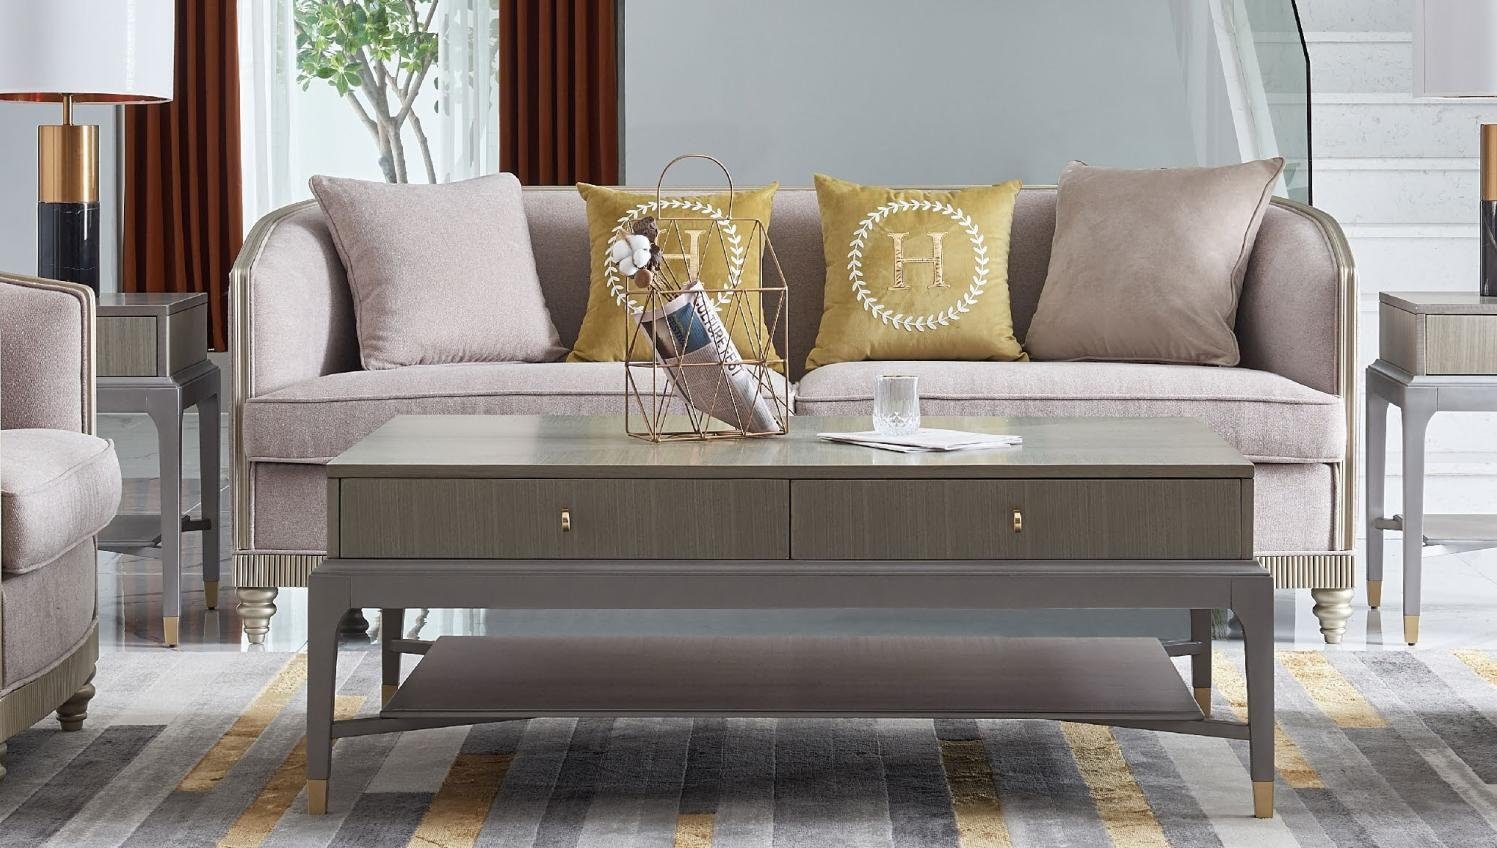 Textil Sofa Neu, moderne Polstermöbel Dreisitzer Europe JVmoebel 3-er beige Couch Made in